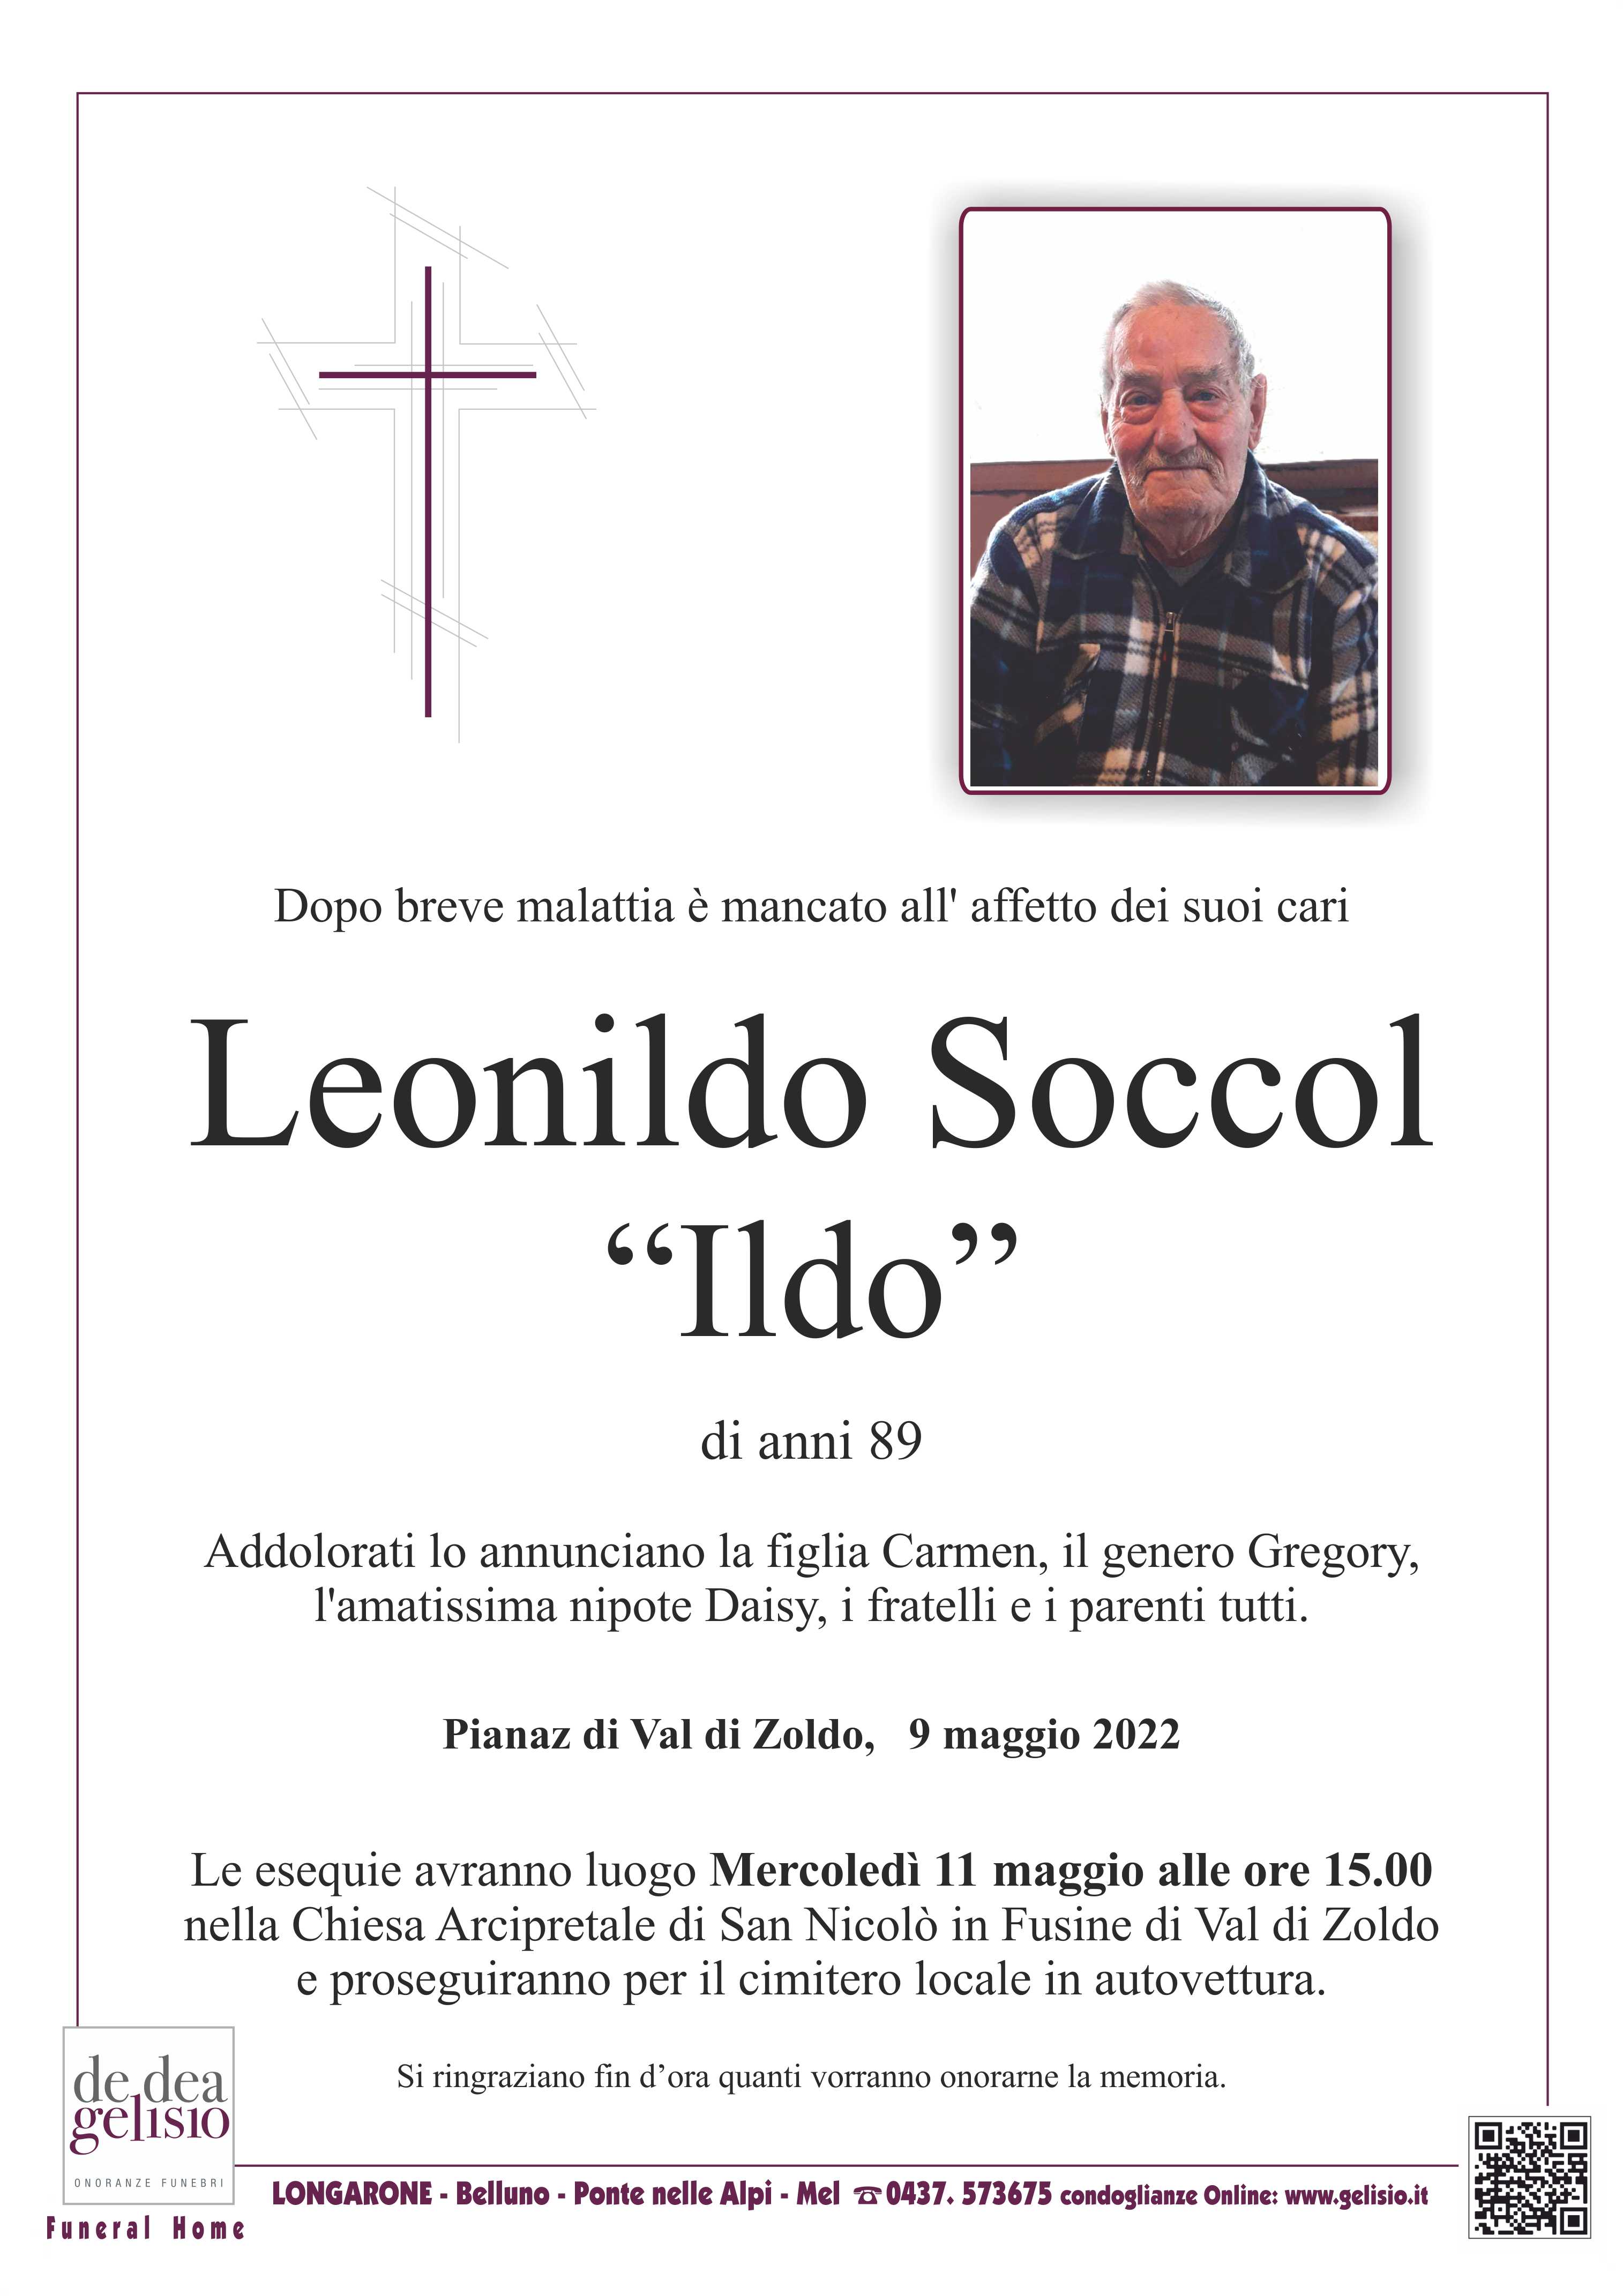 Soccol Leonildo